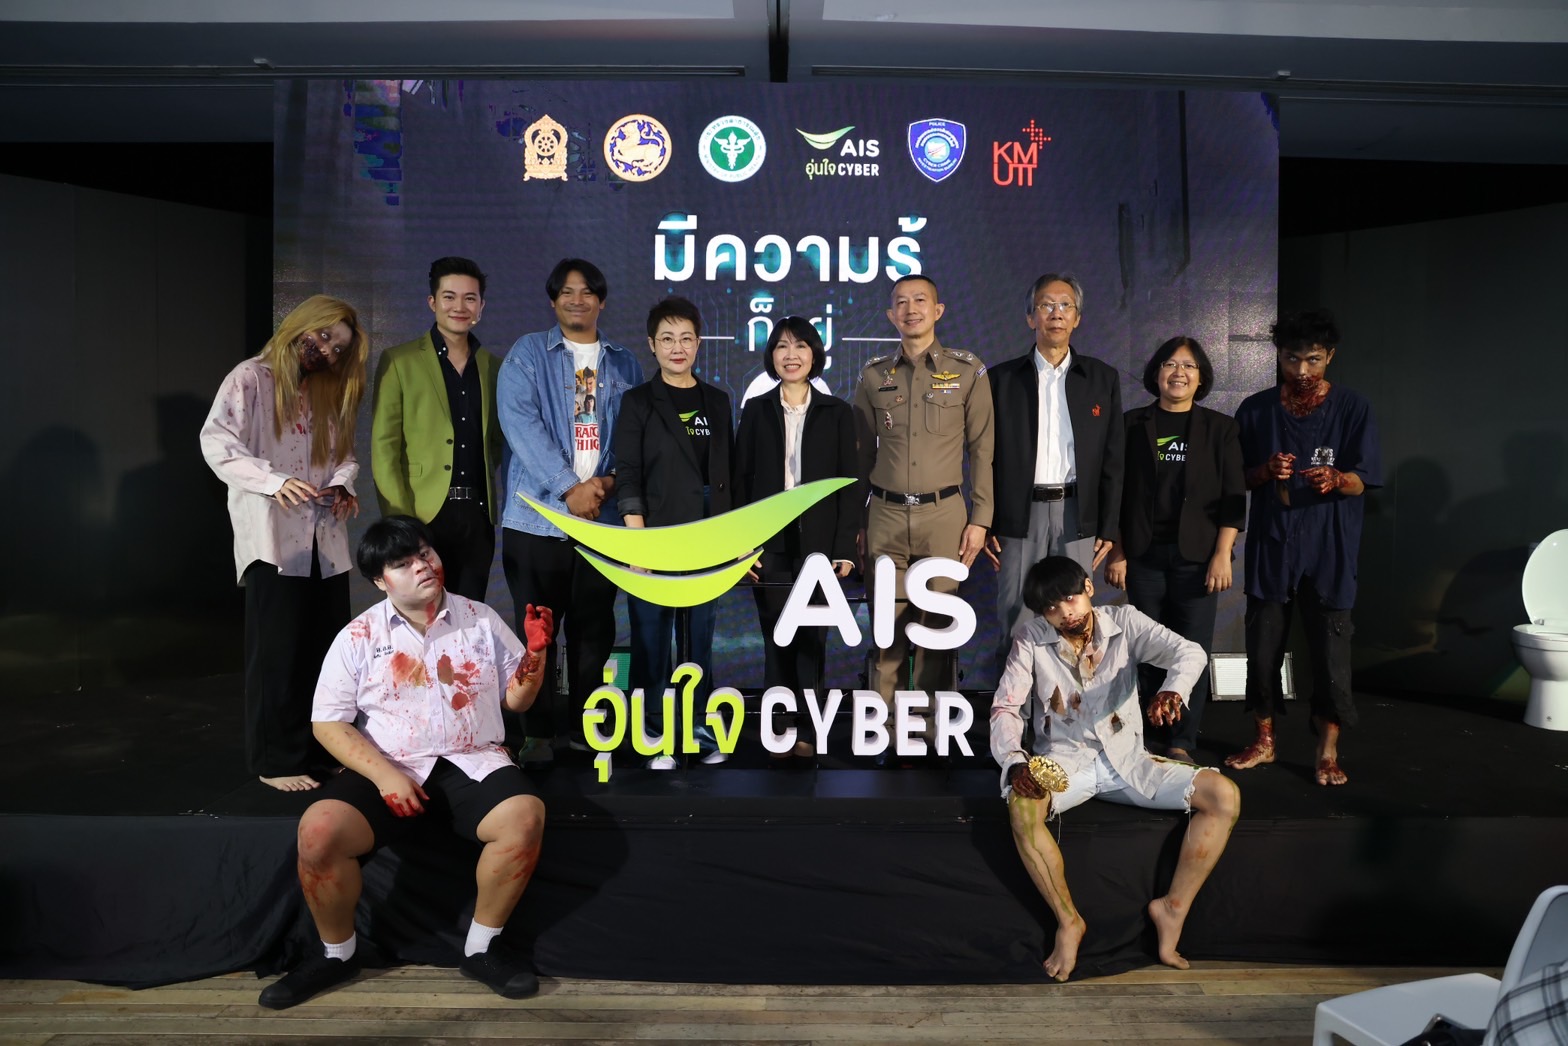 AIS อุ่นใจไซเบอร์ ส่งแคมเปญกระตุกเตือนสังคม ชี้ “มีความรู้ก็อยู่รอด”ชวนคนไทยหยุดเสี่ยงกับทุกภัยไซเบอร์